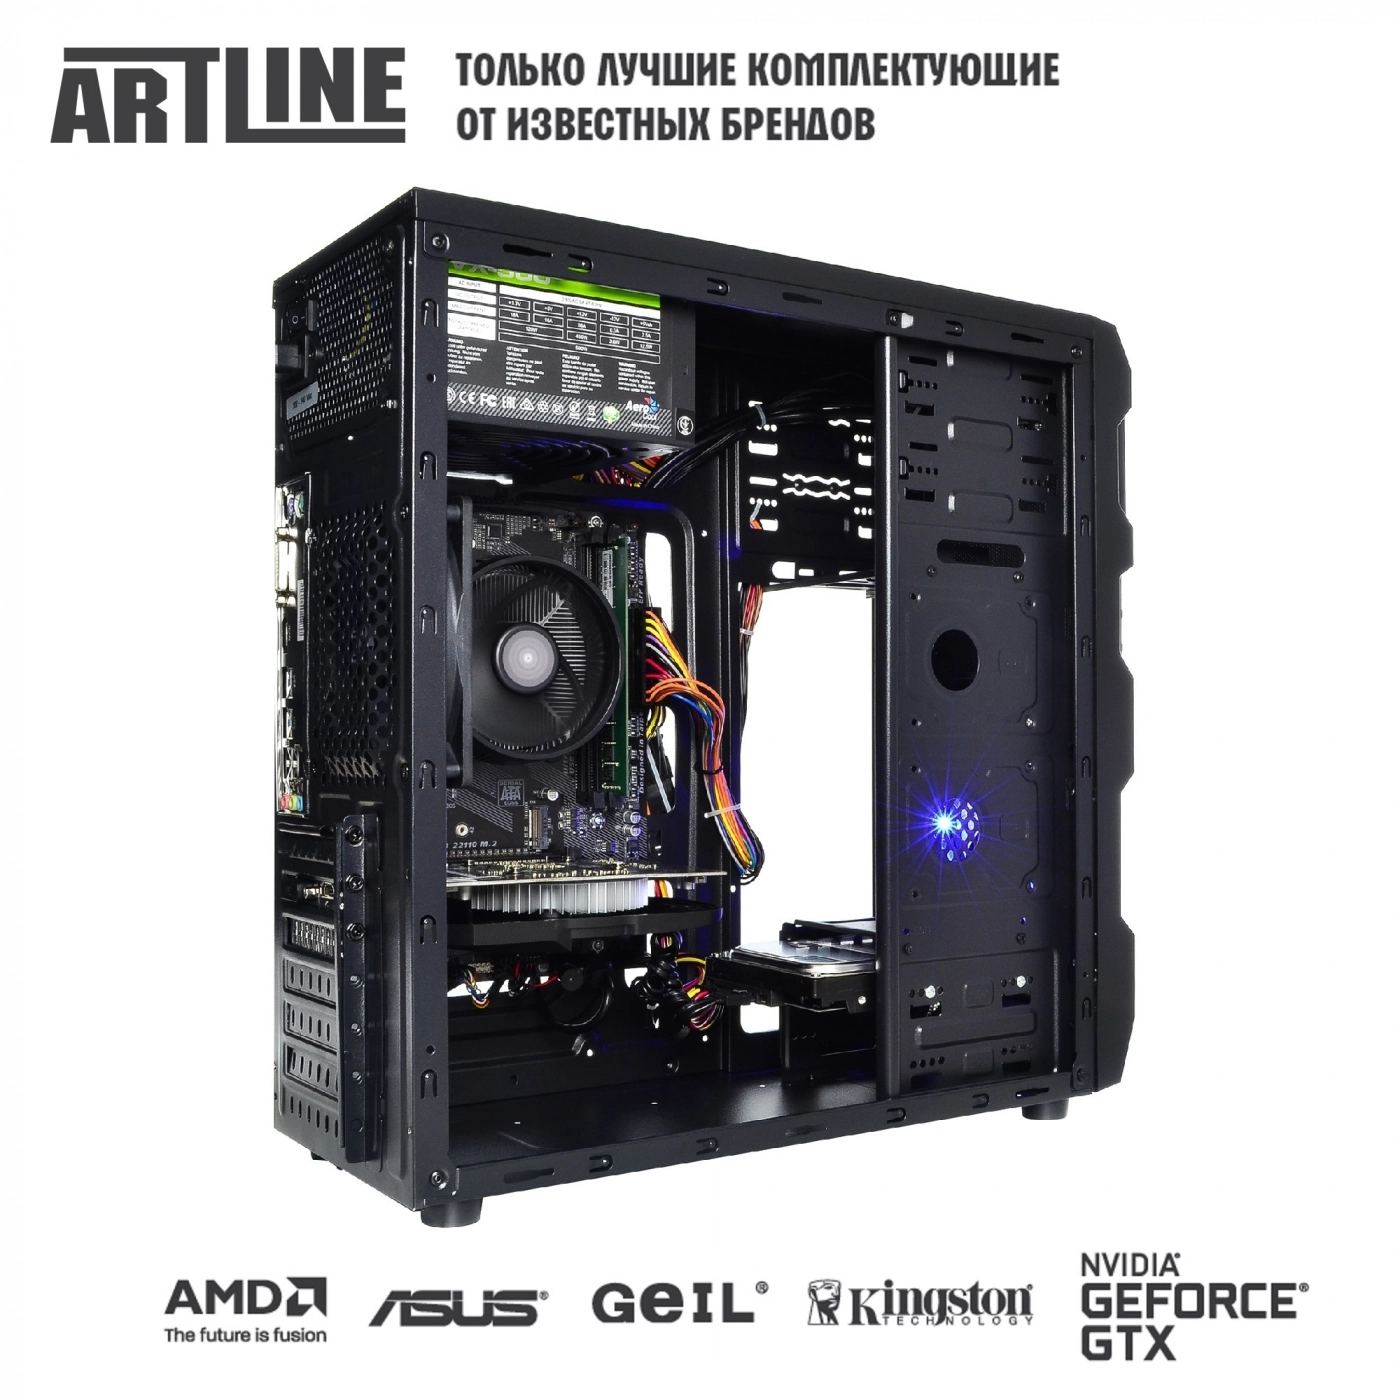 Купить Компьютер ARTLINE Gaming X43v19 - фото 6